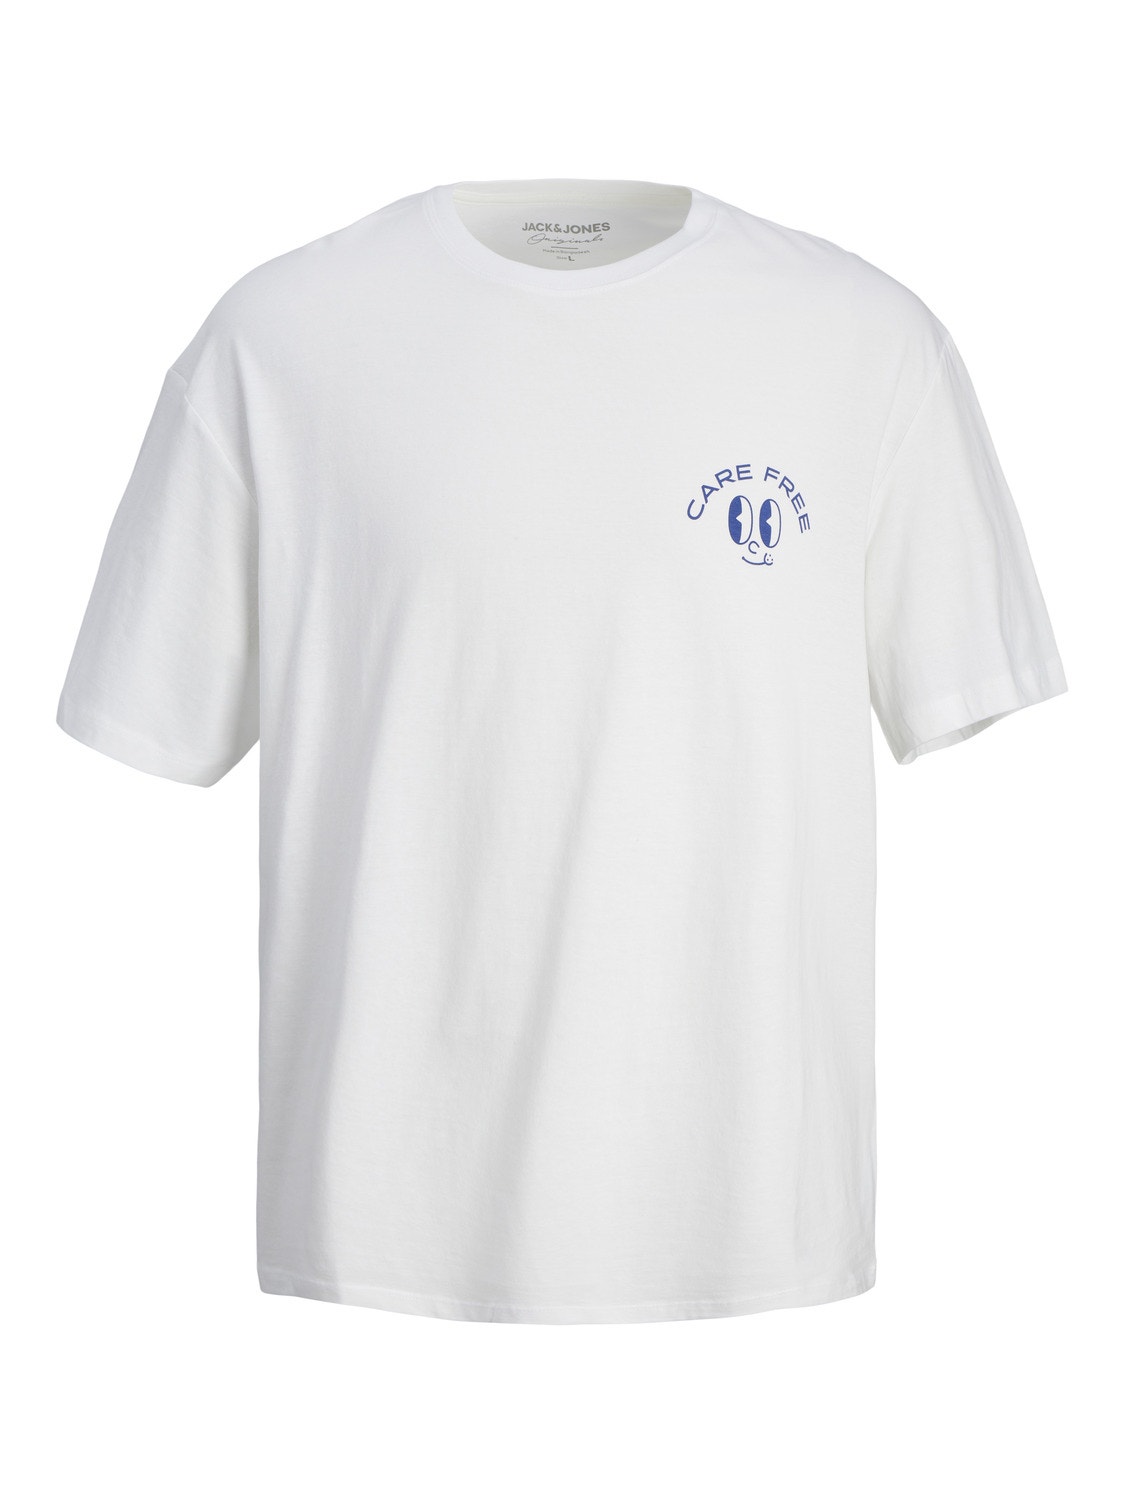 Jack & Jones Plus Size Camiseta Estampado -Bright White - 12261568